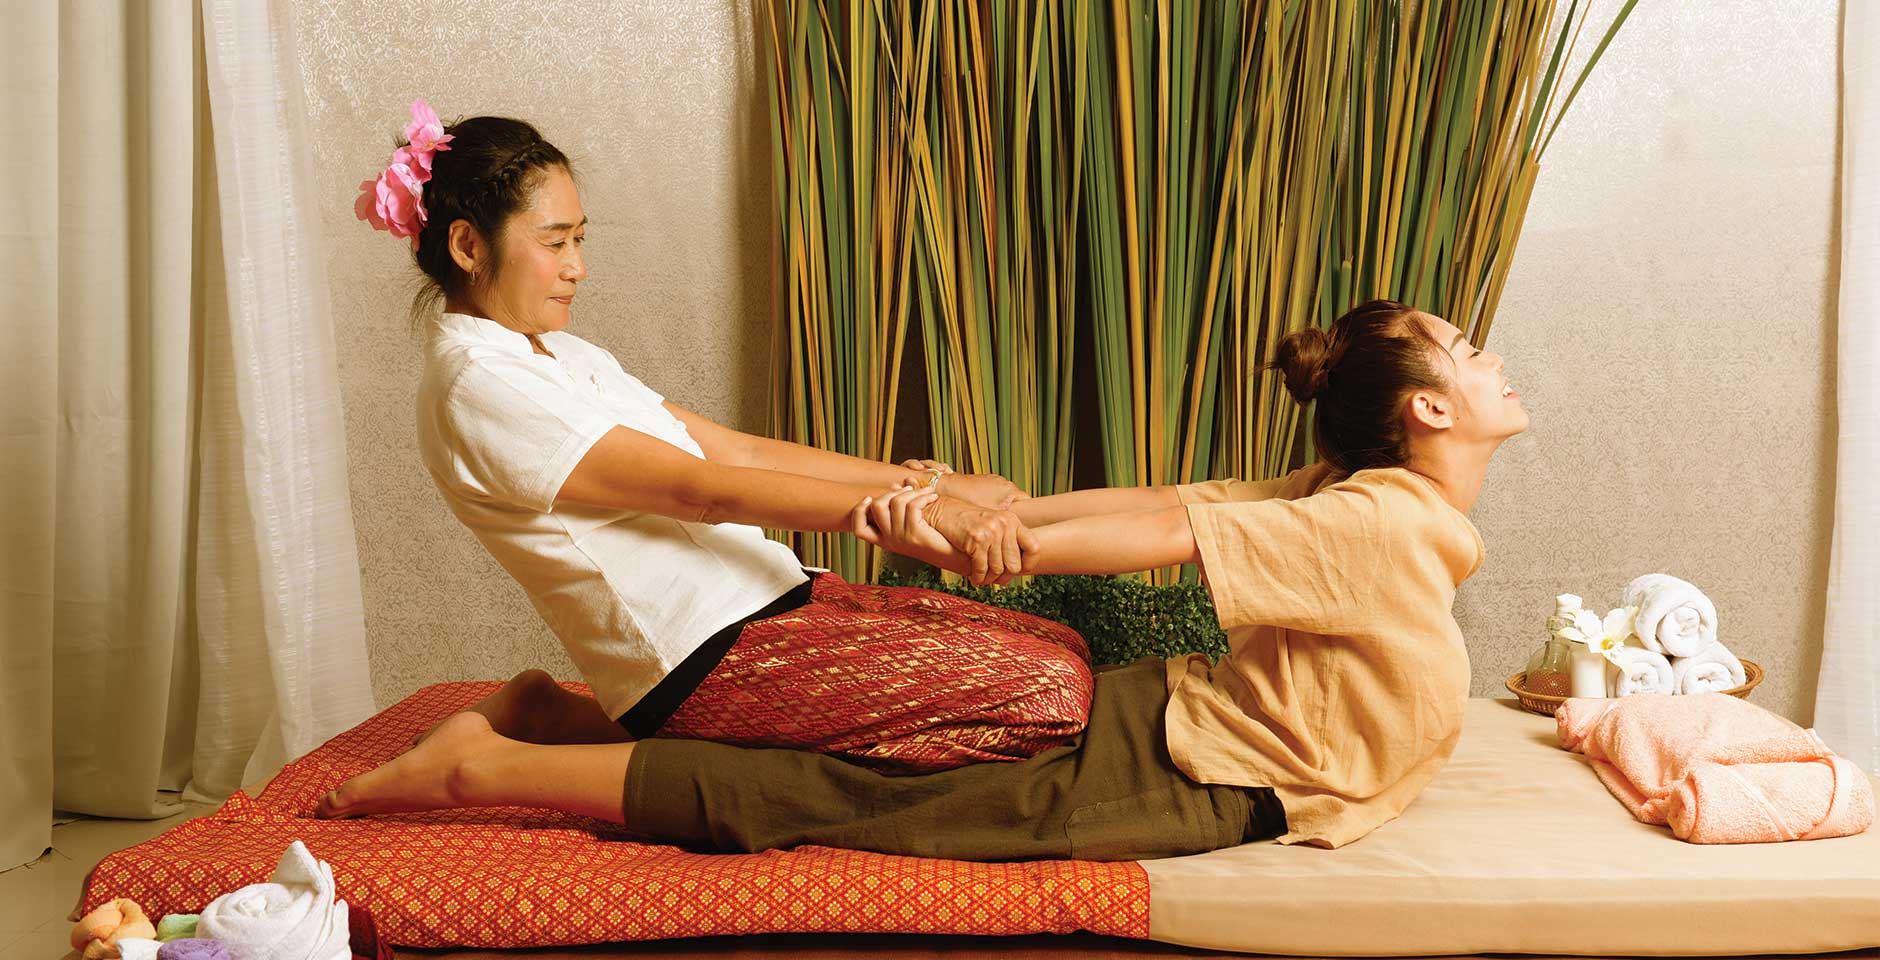 Traditional massage parlor. Тайский массаж для мужчин. Традиционный тайский массаж в кимоно. Тайский массаж в Тайланде. Тайские массажистки.